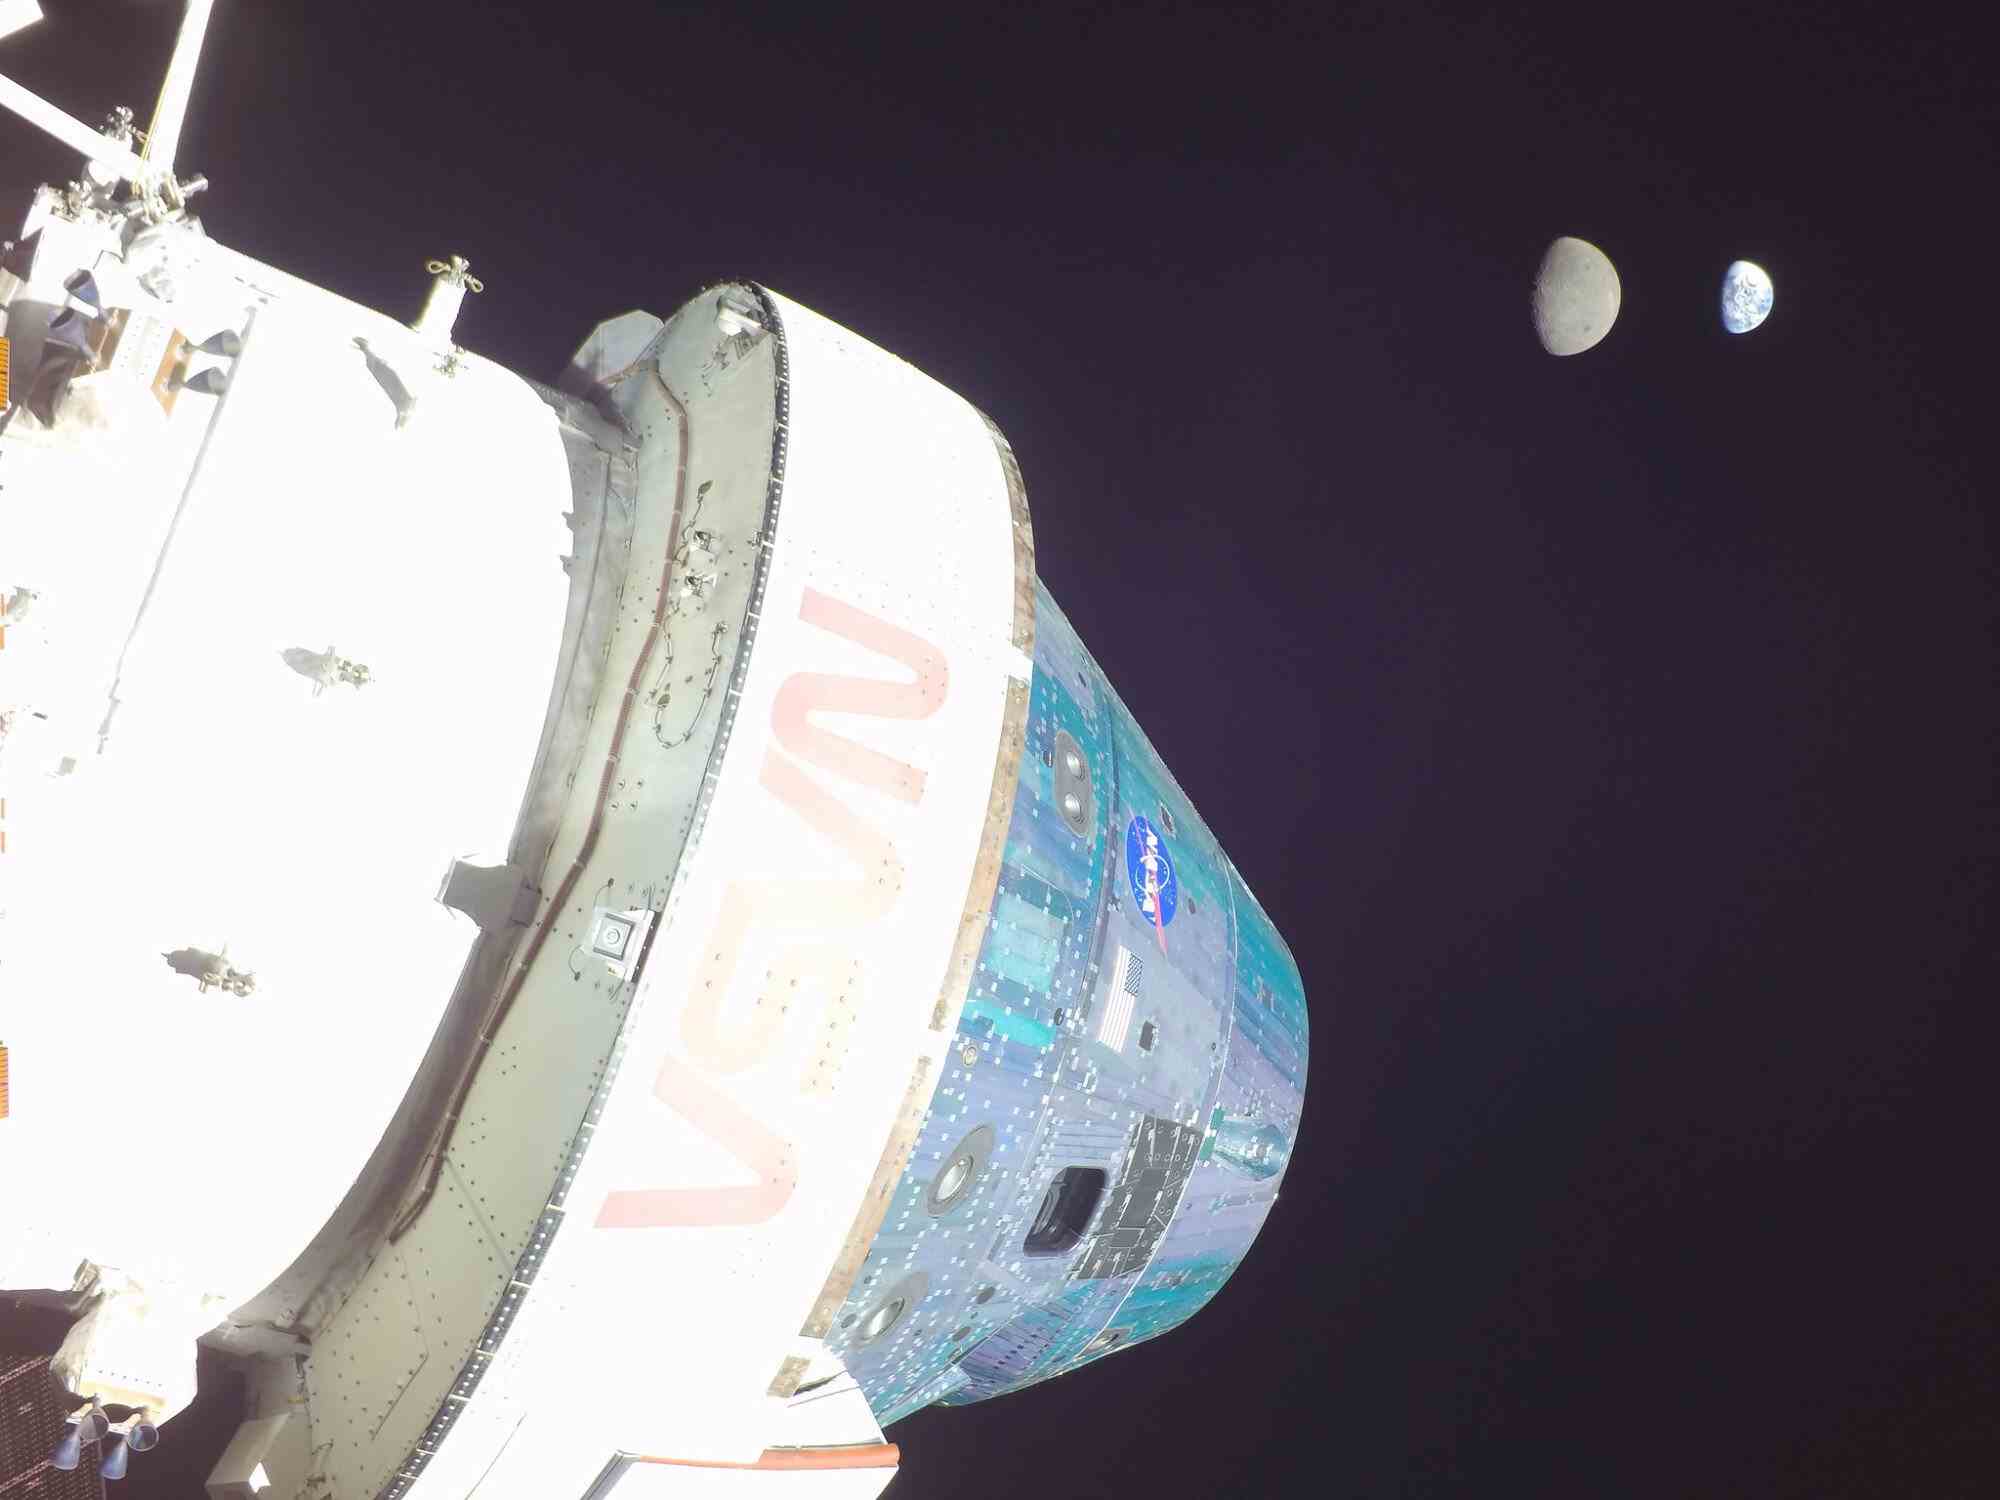 das Orion-Raumschiff mit dem Mond und der Erde in der Ferne